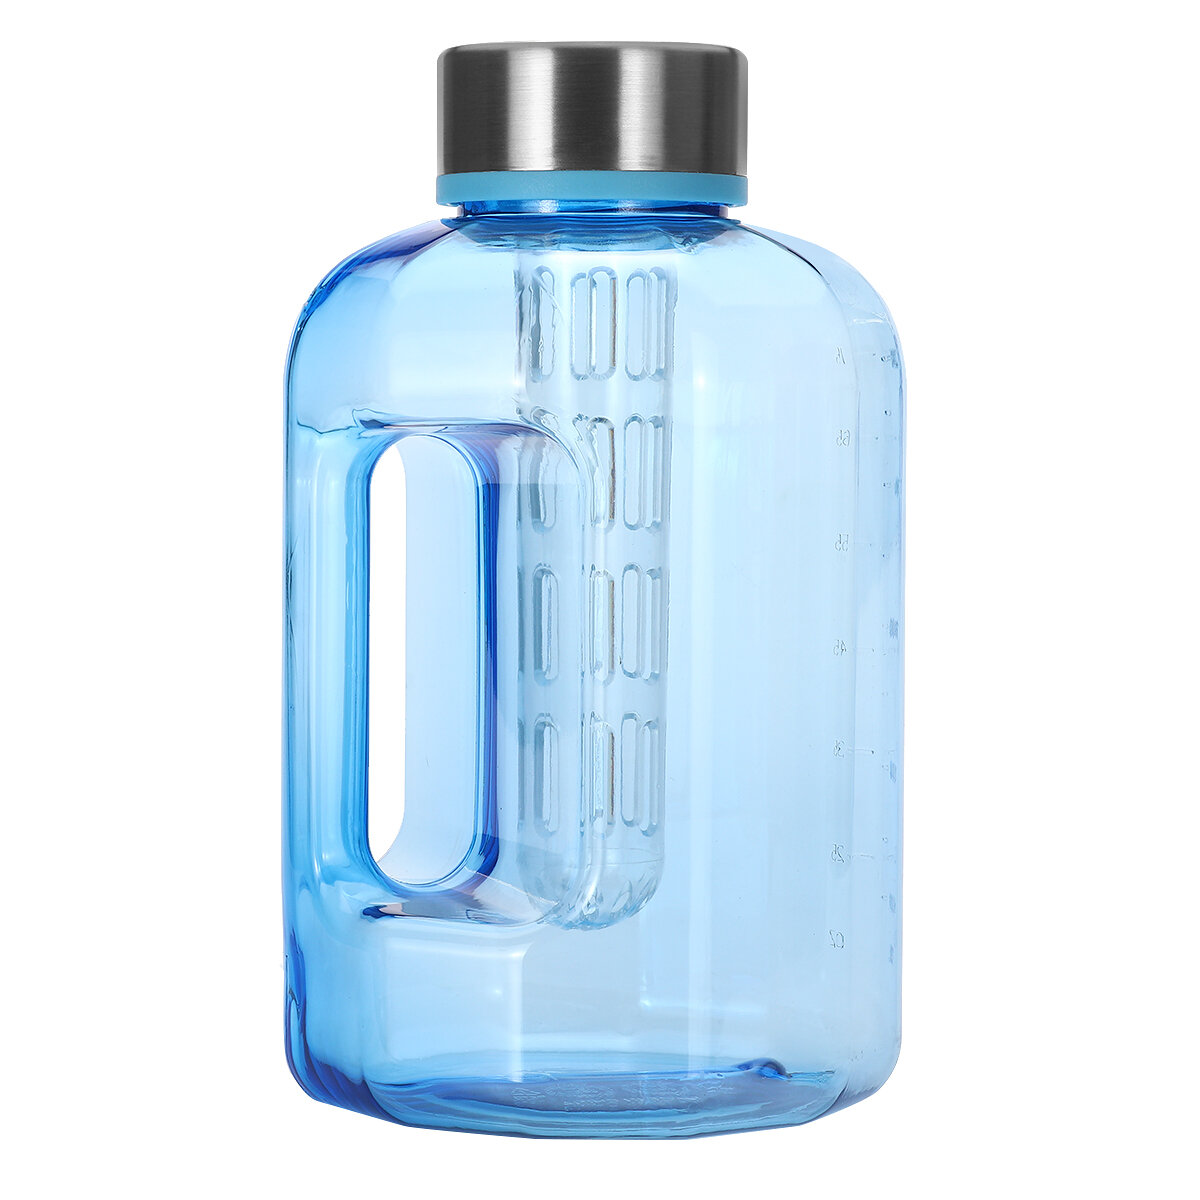 Botella de agua deportiva de gran capacidad de 2.2L/84oz sin BPA con tapa para entrenamiento en el gimnasio, senderismo y ciclismo.